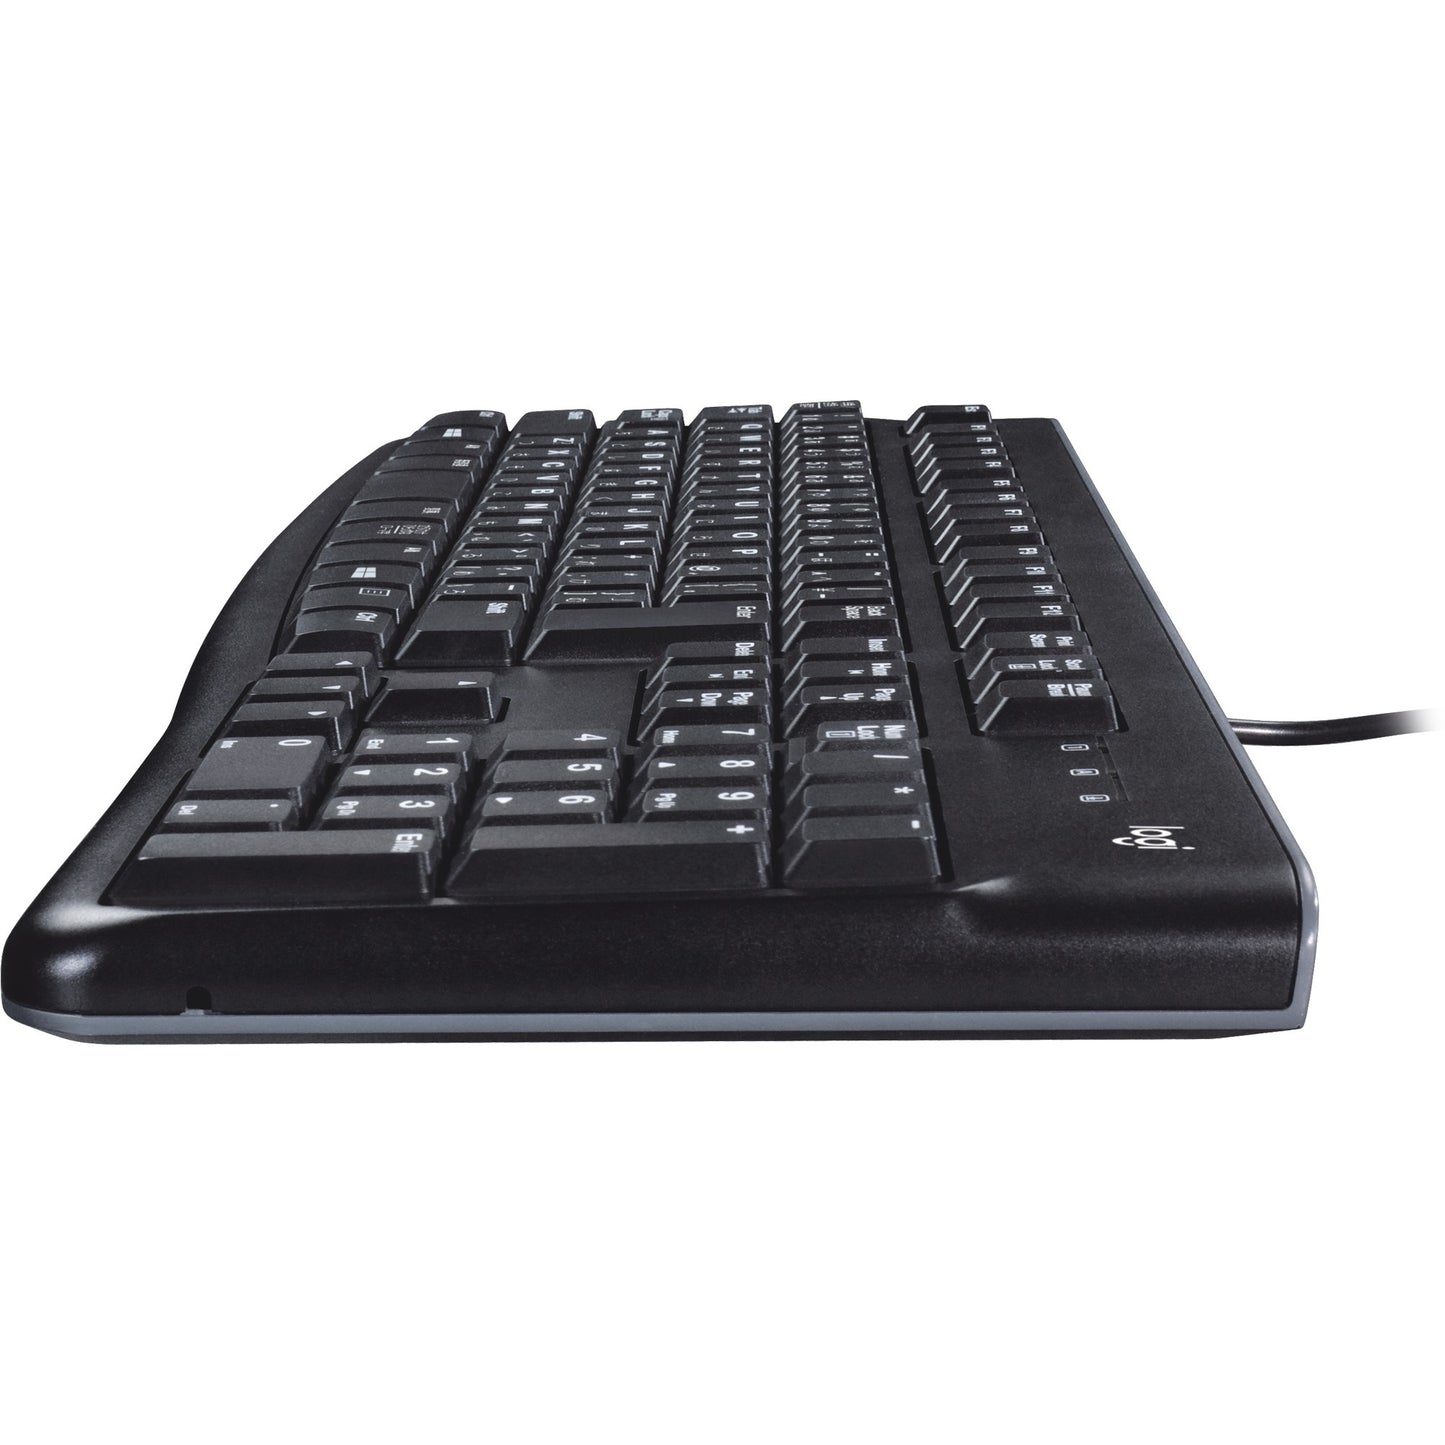 Logitech Keyboard K120 para empresas